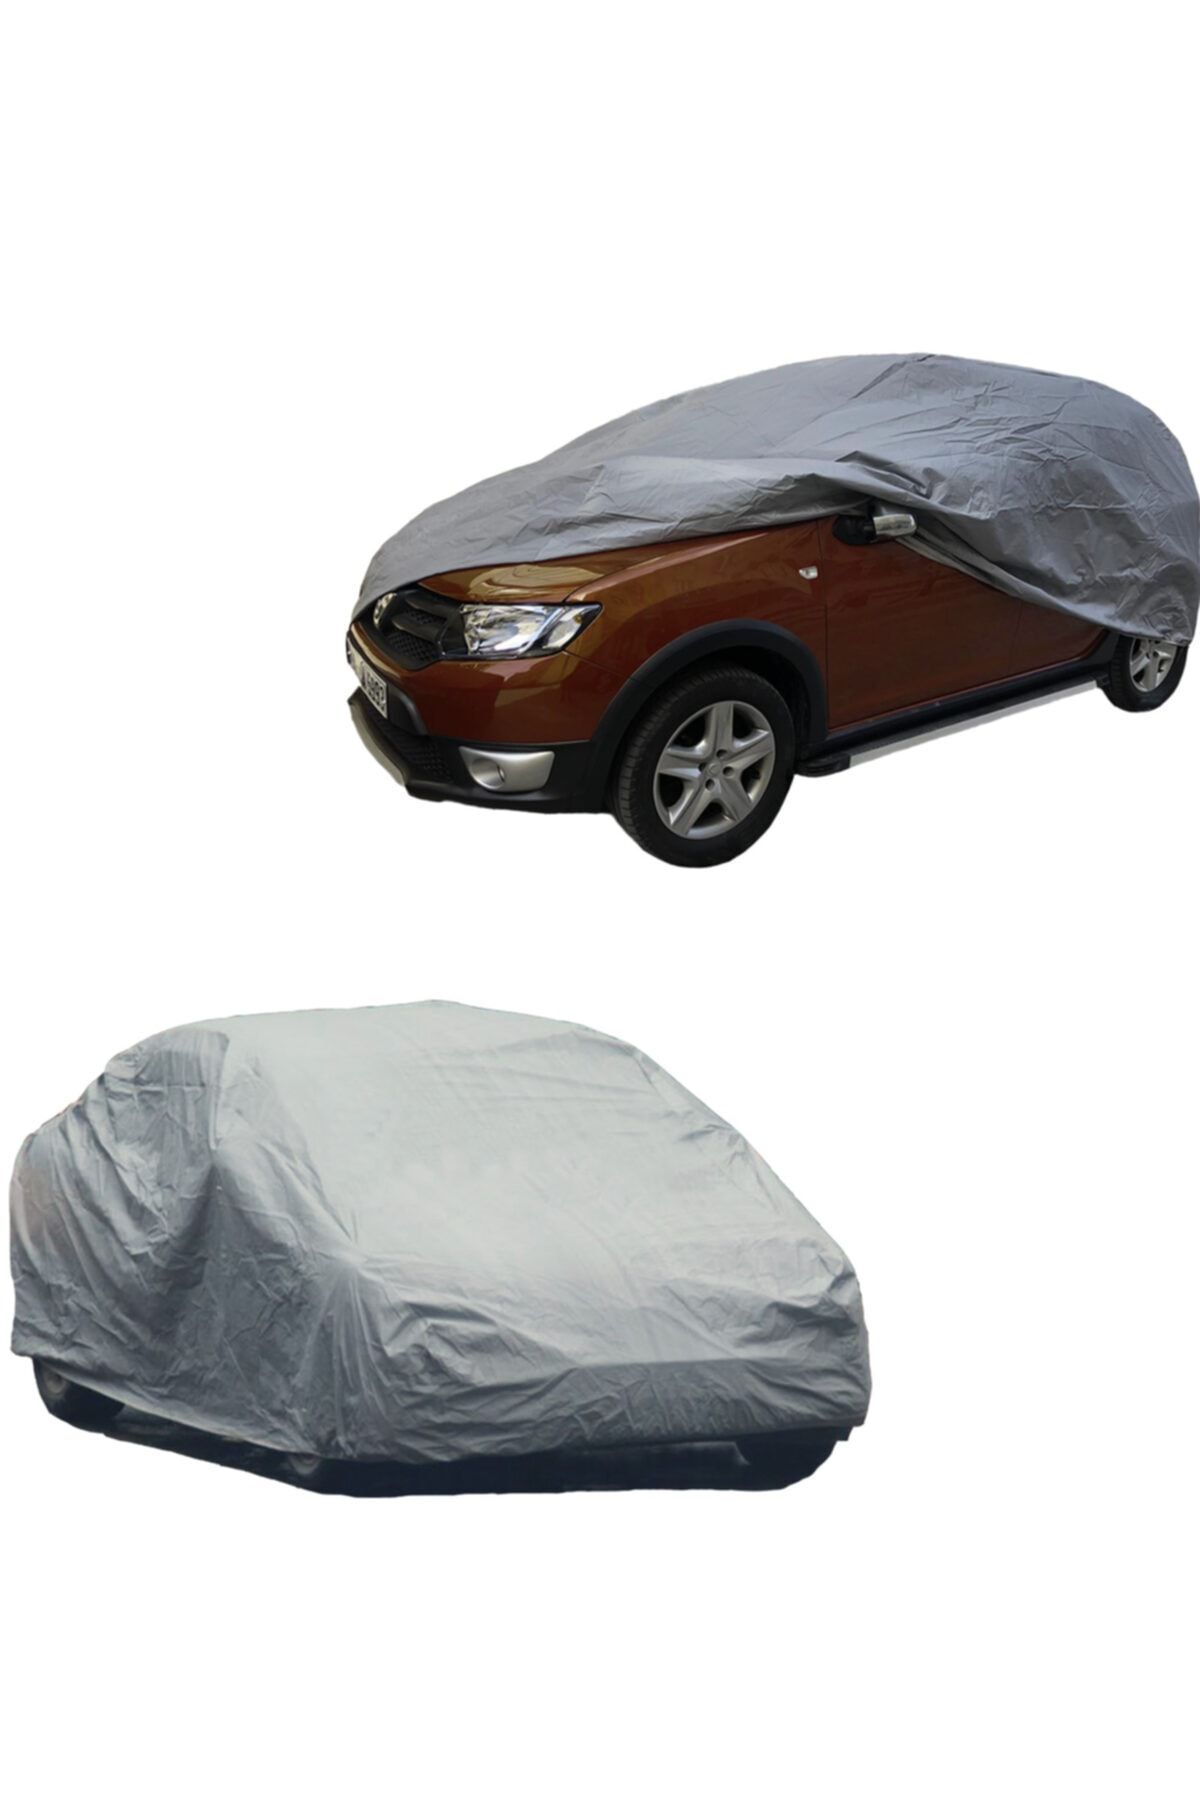 AUTOKN Chevrolet Spark Car Tarpaulin, Cover, Tent (2005-2009